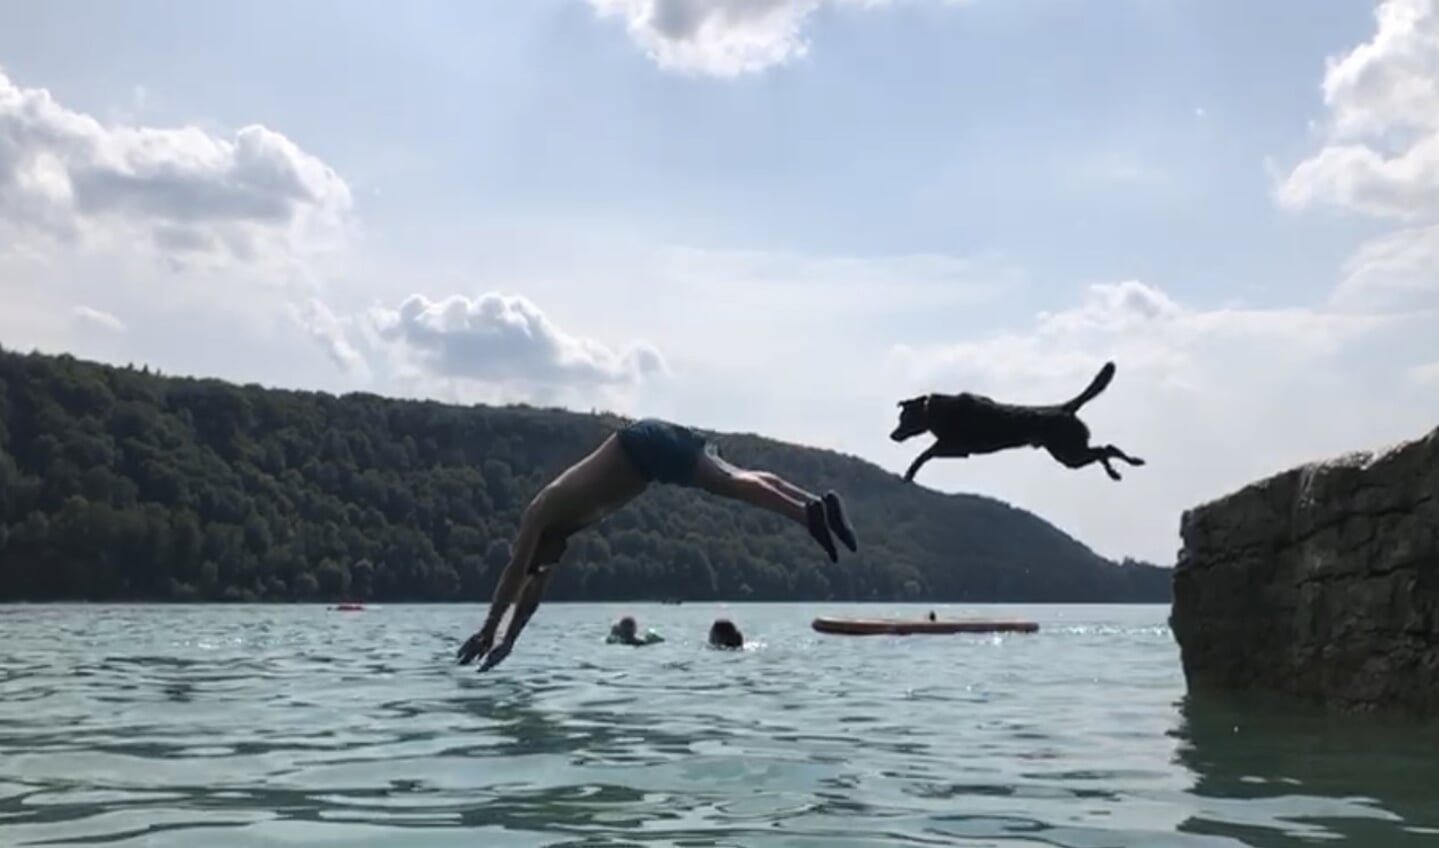 Vakantie in Frankrijk, heerlijk bij een meer. Onze hond bleek een echte waterrat; waar de baas gaat, gaat hij. Een heerlijke duik vanaf een rots gaat hij niet uit de weg.